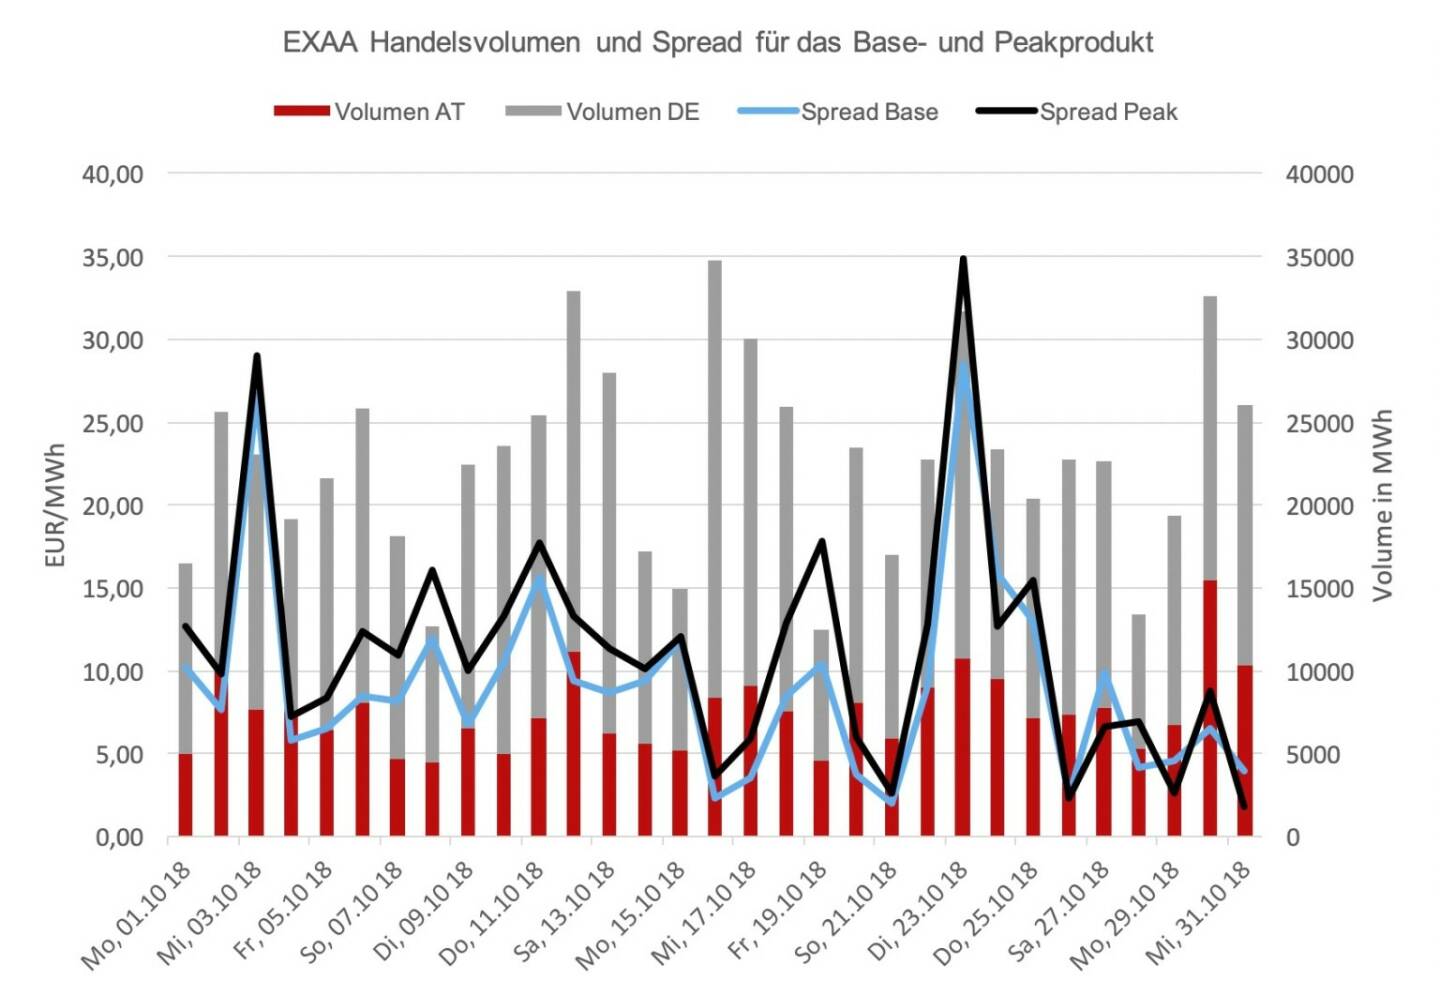 EXAA Handelsvolumen und Spread für das Base- und Peakprodukt: Der Location-Spread, das ist die Preisdifferenz der Handelsprodukte zwischen dem österreichischen- und dem deutschen Marktgebiet, ergab ein durchschnittliches Preisniveau von 9,22 EUR/MWh für das Baseprodukt und 11,22 EUR/MWh für das Peakprodukt. Der höchste Location-Spread wurde am 23.Oktober erzielt und betrug 28,5 EUR/MWh für das Baseprodukt und 34,88 EUR/MWh für das Peakprodukt. 